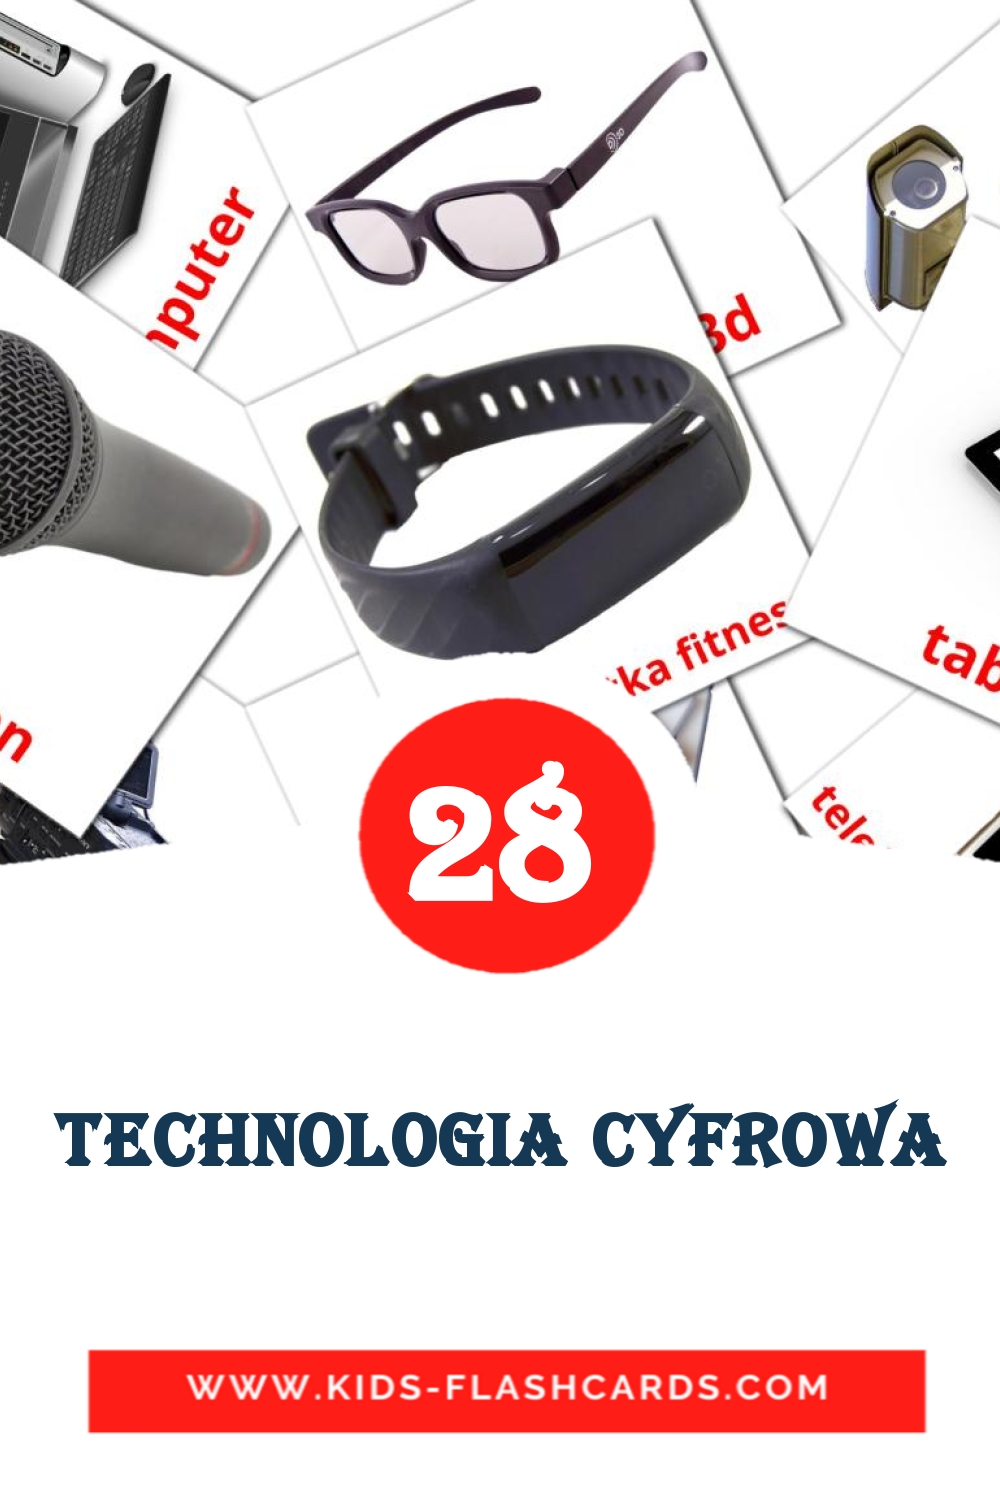 28 cartes illustrées de Technologia cyfrowa pour la maternelle en polonais